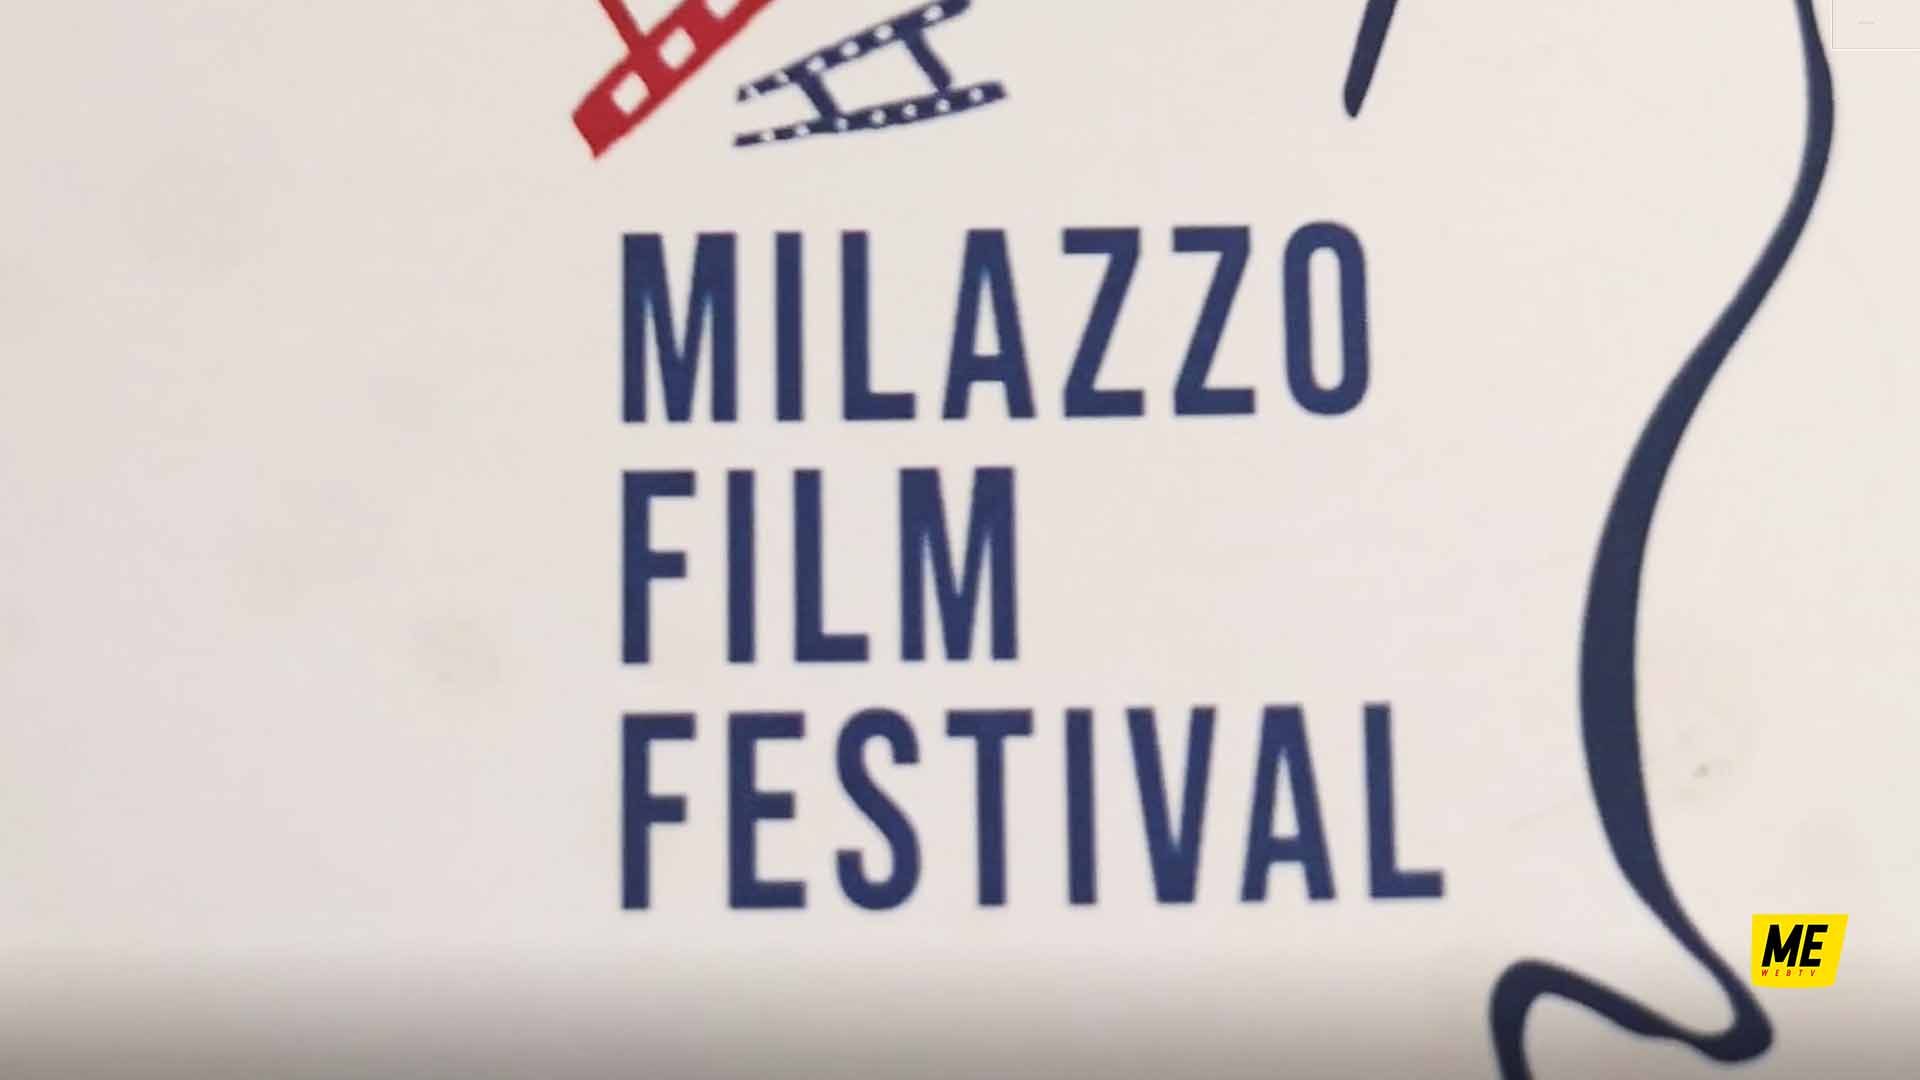 Milazzo Film Festival 2022_MessinaWebTv_Cultura